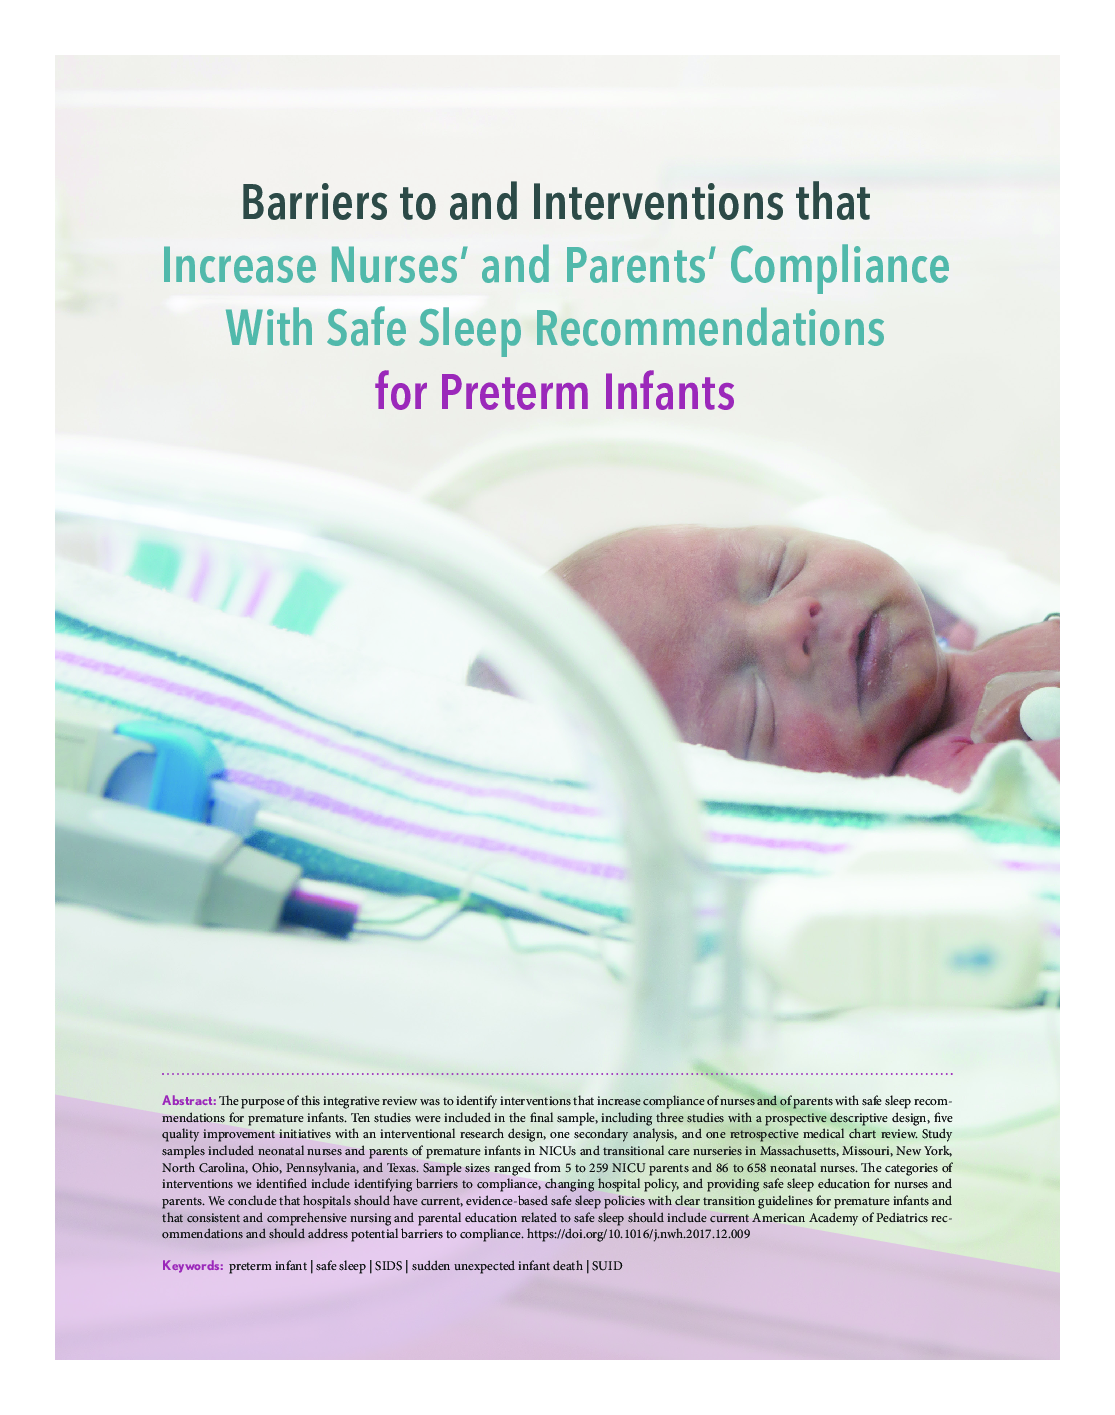 موانع و مداخلاتی که افزایش تطابق پرستاران و والدین با توصیه های خواب ایمن برای نوزادان نارس 